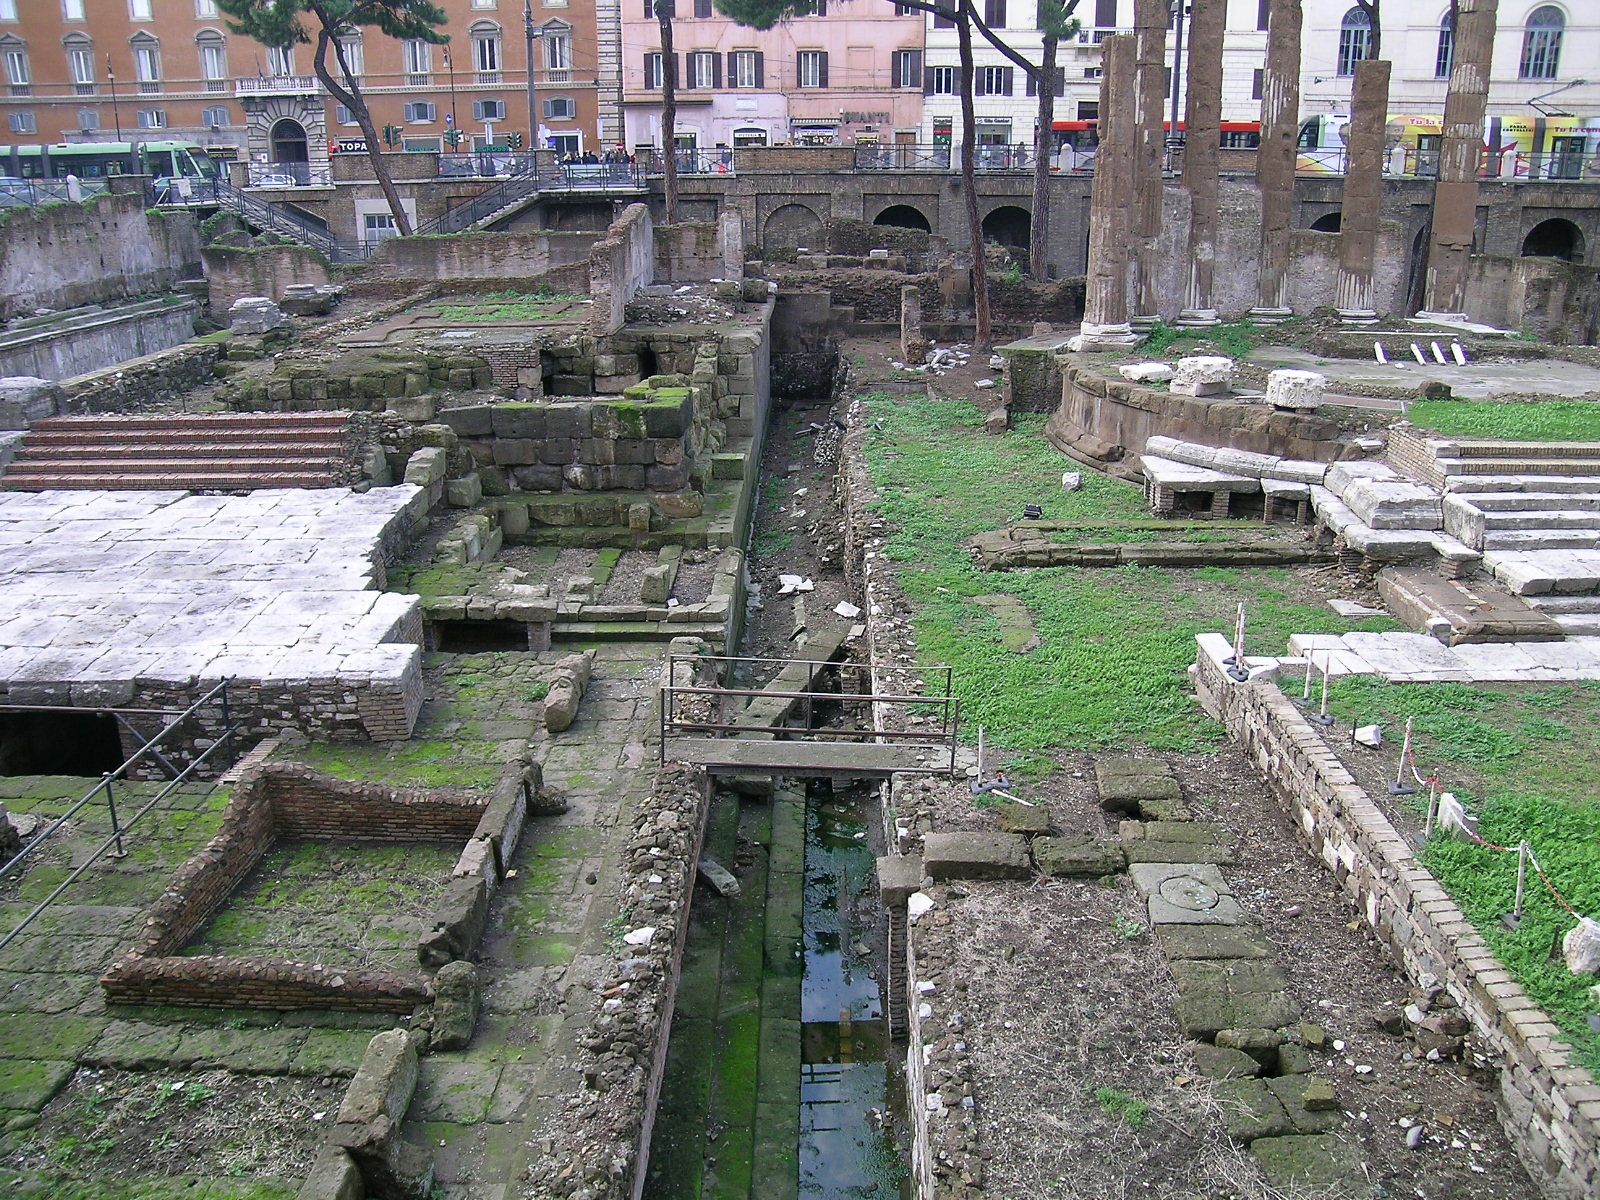 El lugar donde fue asesinado Julio César, ubicado en el área arqueológica de Torre Argentina, Roma